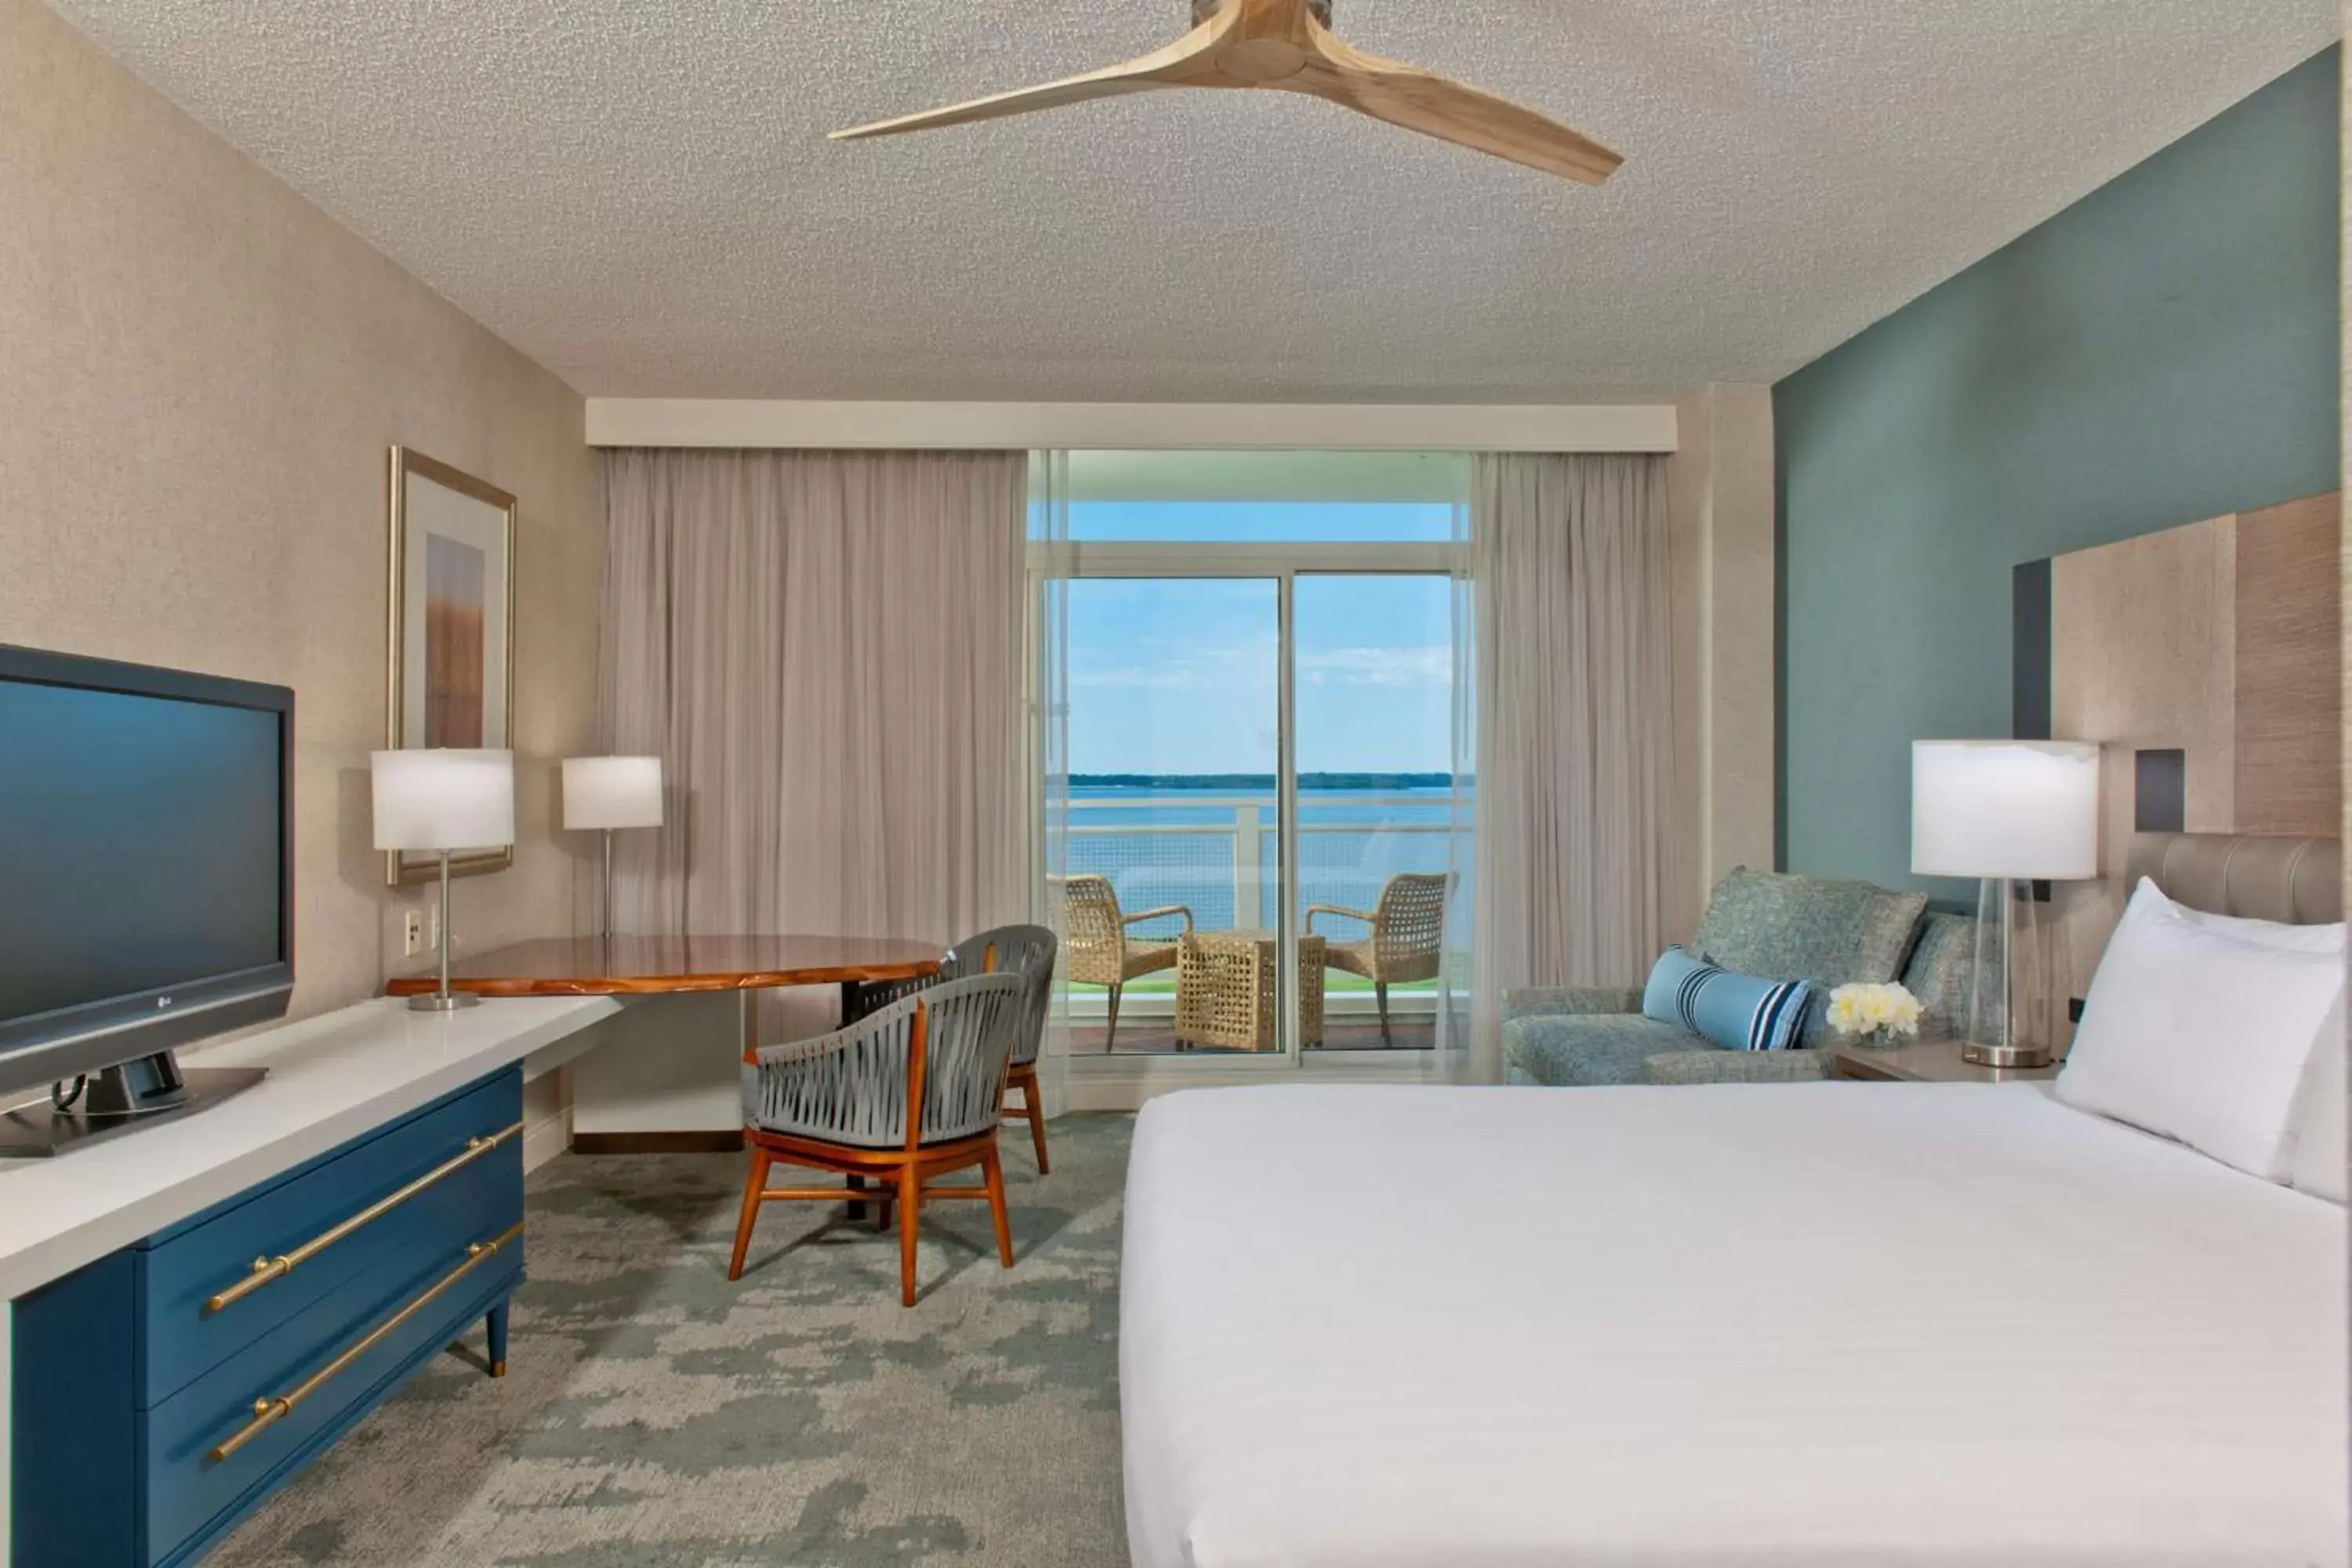 Bedroom in Hyatt Regency Chesapeake Bay Golf Resort, Spa & Marina